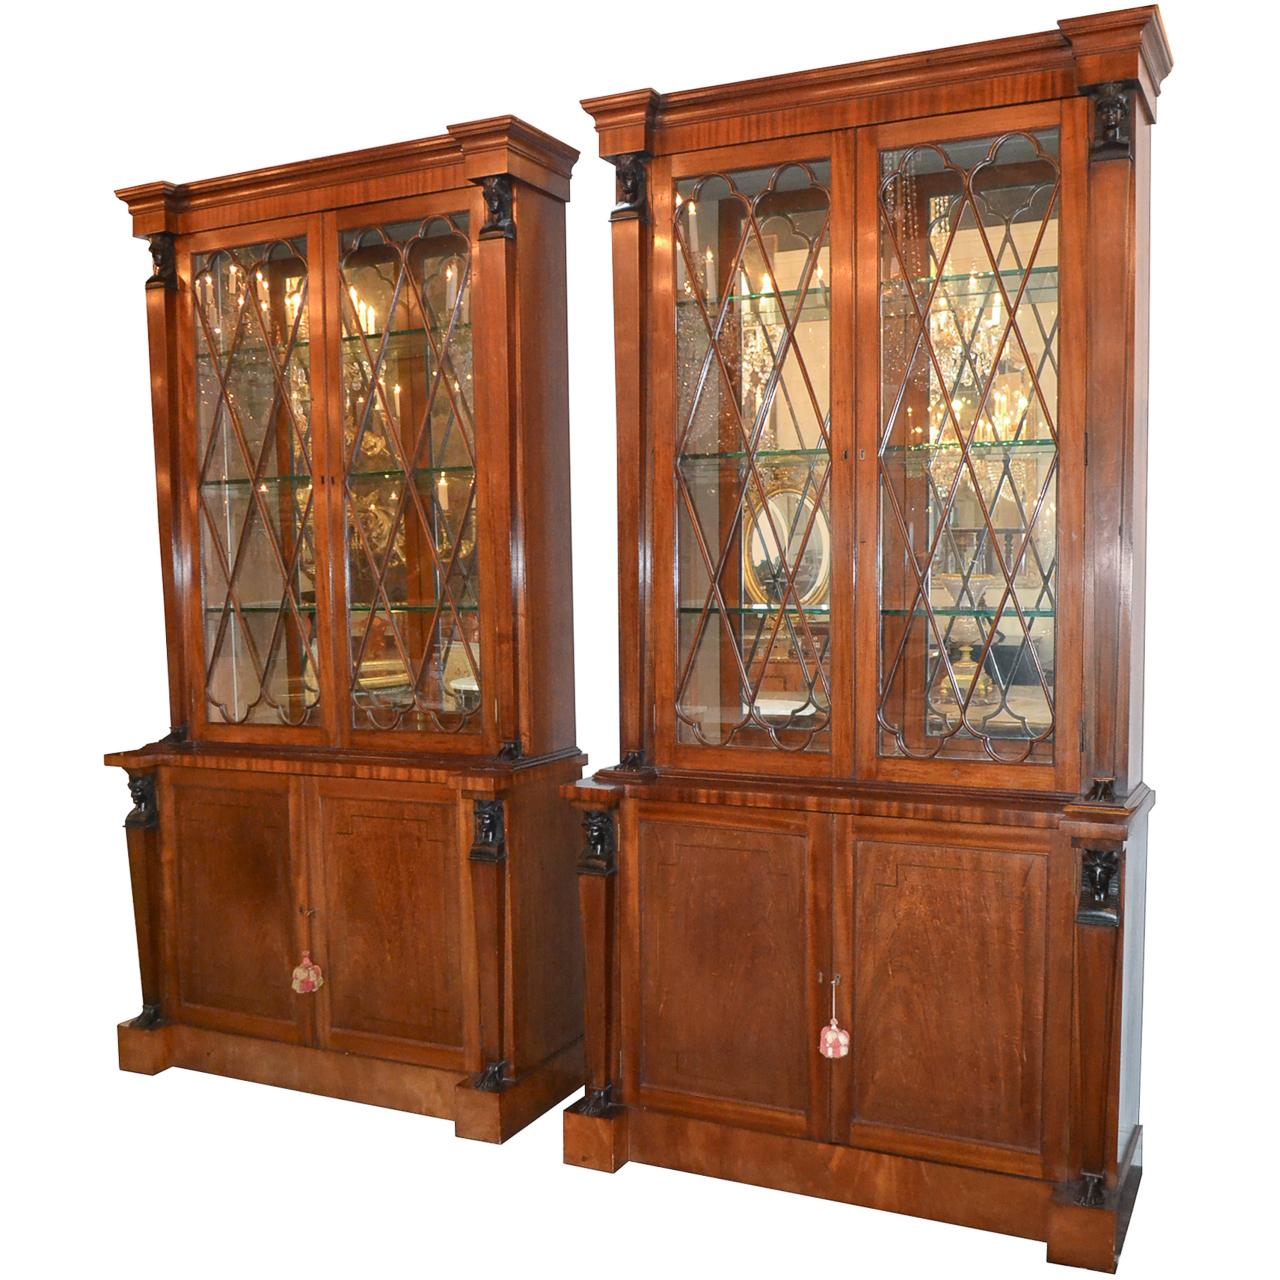 Pair of English Regency Mahogany Cabinets